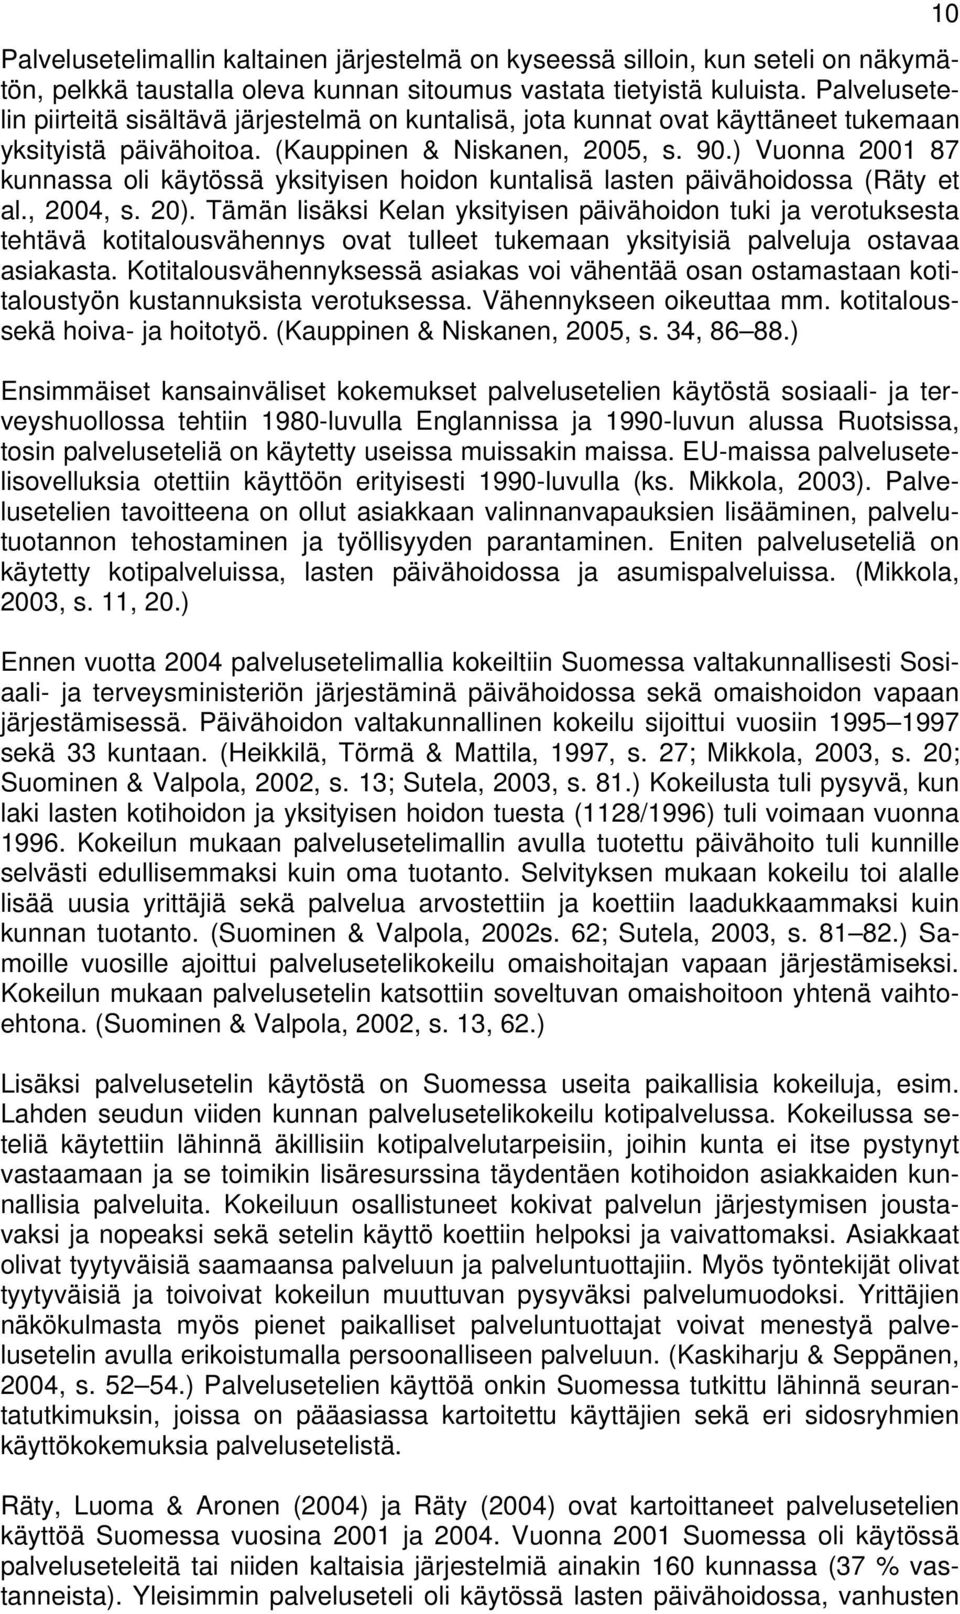 ) Vuonna 2001 87 kunnassa oli käytössä yksityisen hoidon kuntalisä lasten päivähoidossa (Räty et al., 2004, s. 20).